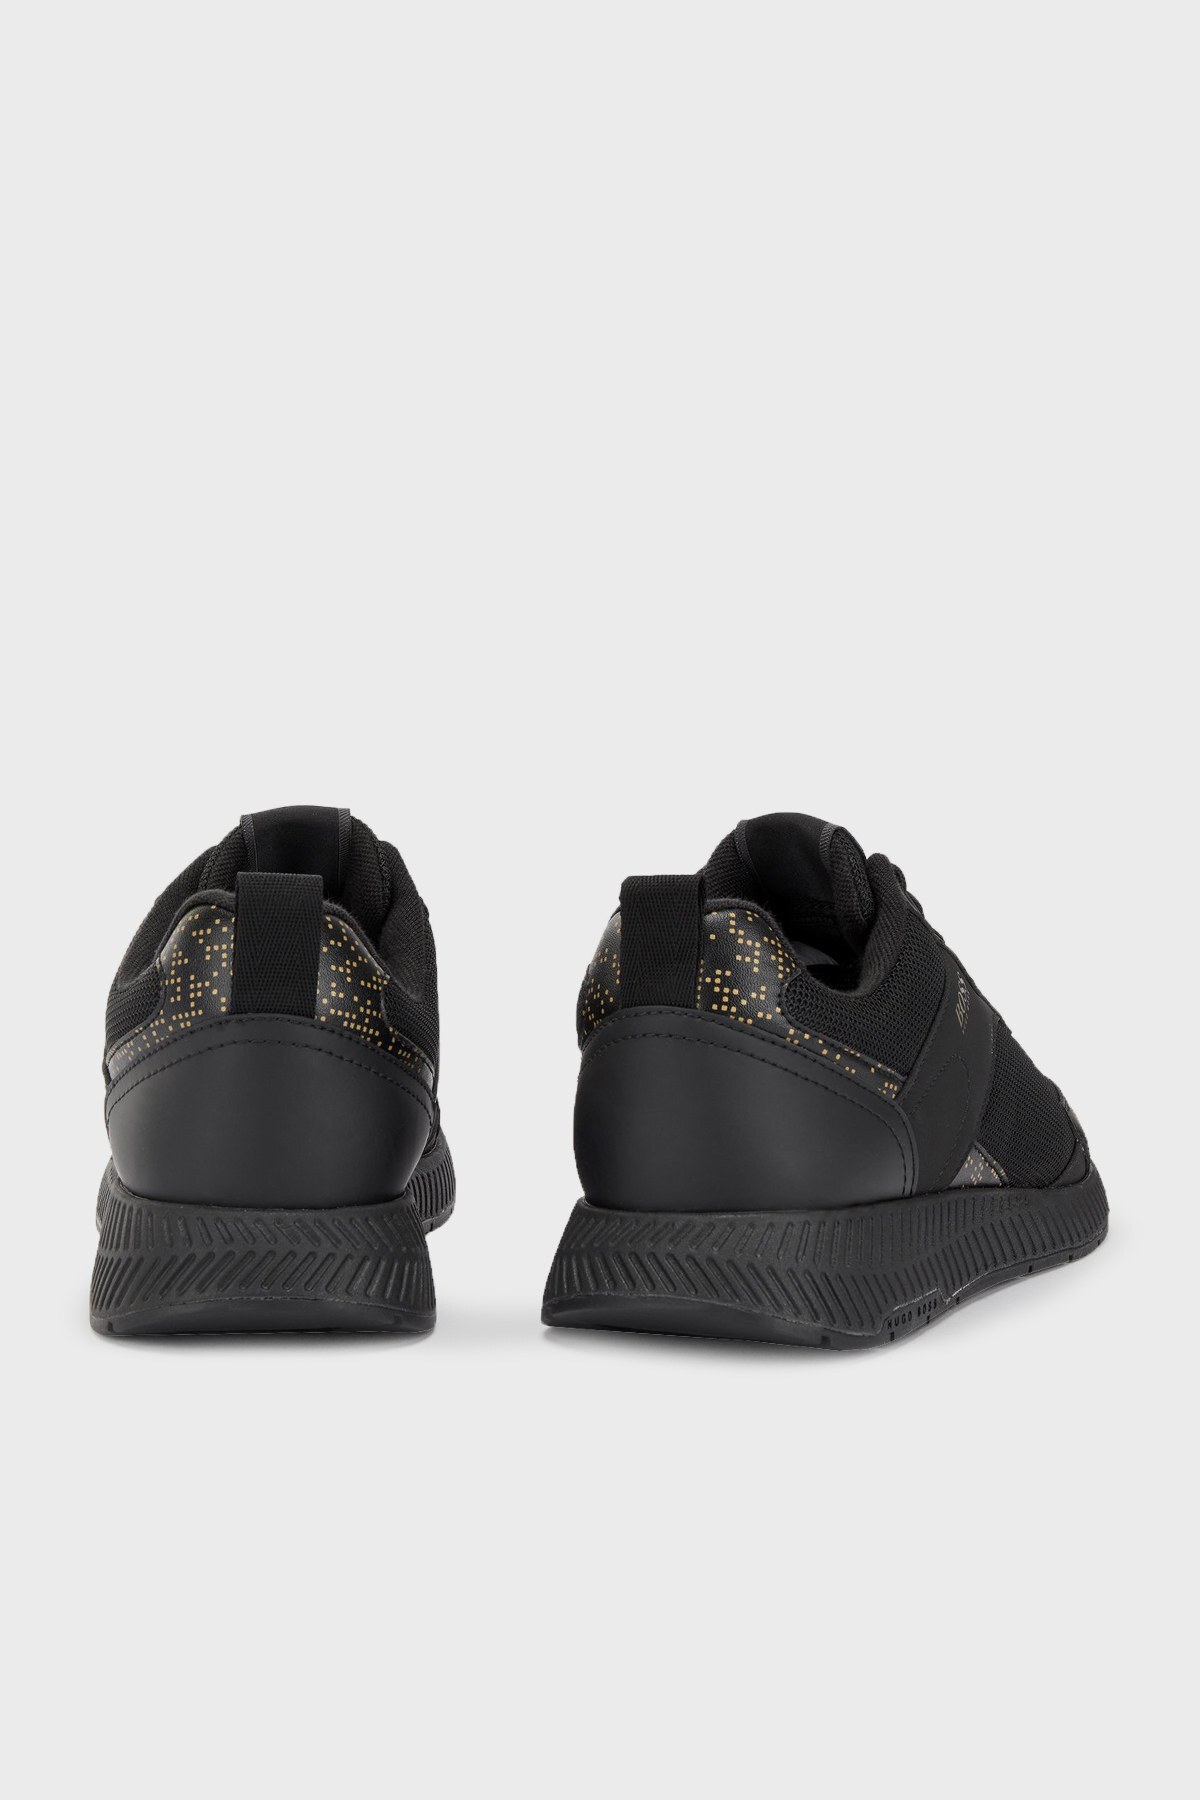 Hugo Boss Logolu Bağcıklı Sneaker Erkek Ayakkabı 50465316 007 SİYAH